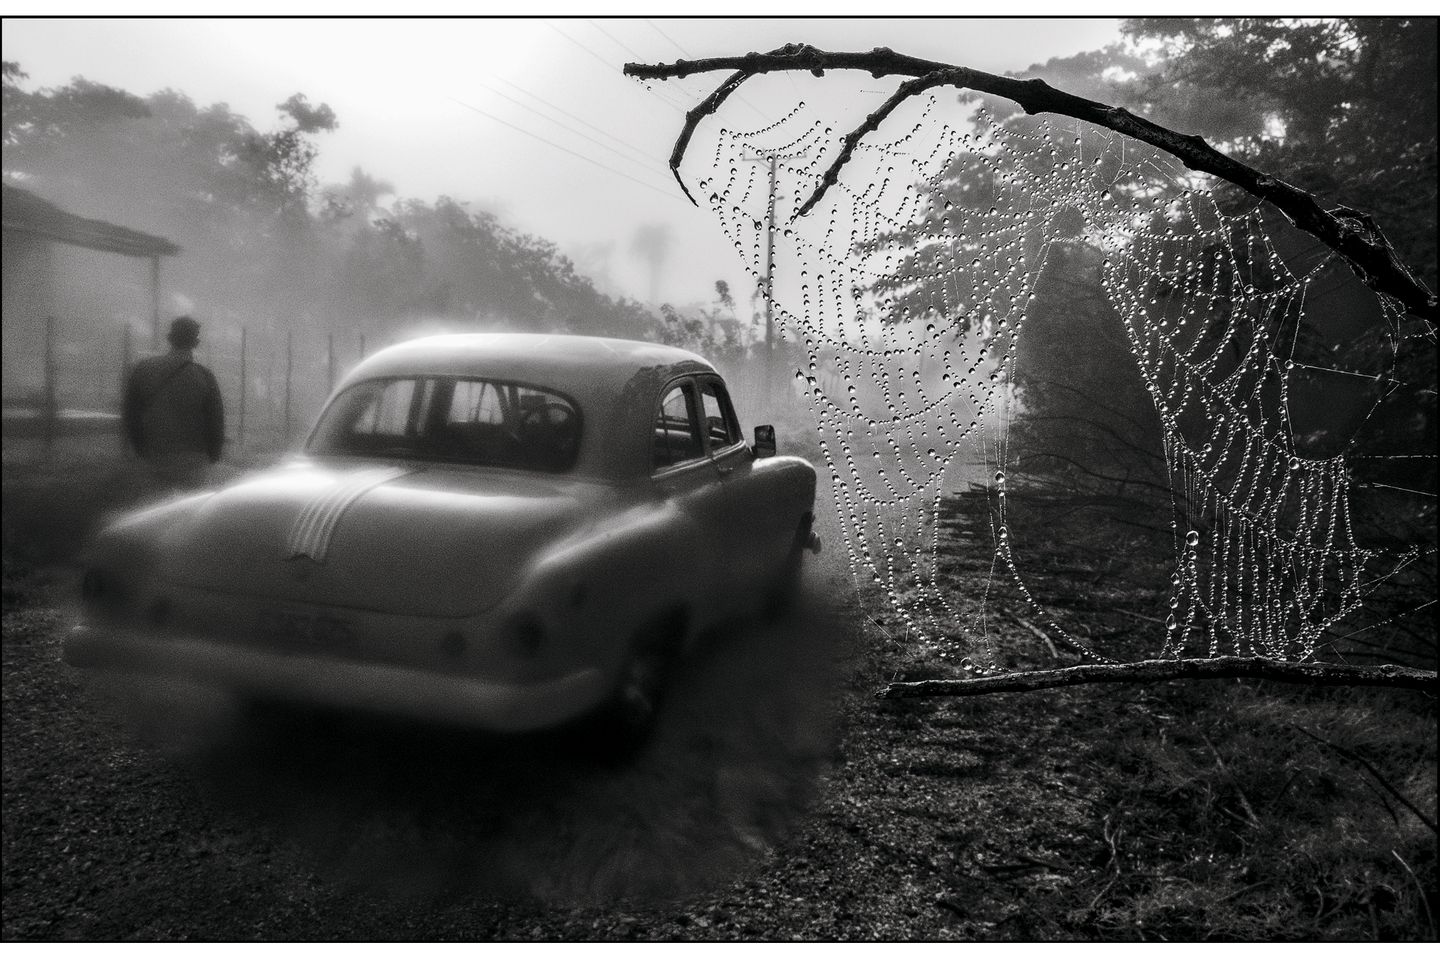 Sie gehören zum Fotoklischee in jedem Reiseführer, jeder Kuba-Geschichte: altersschwache Limousinen aus der Zeit vor der Revolution. Cañibano ironisiert es mit einem Spinnengewebe